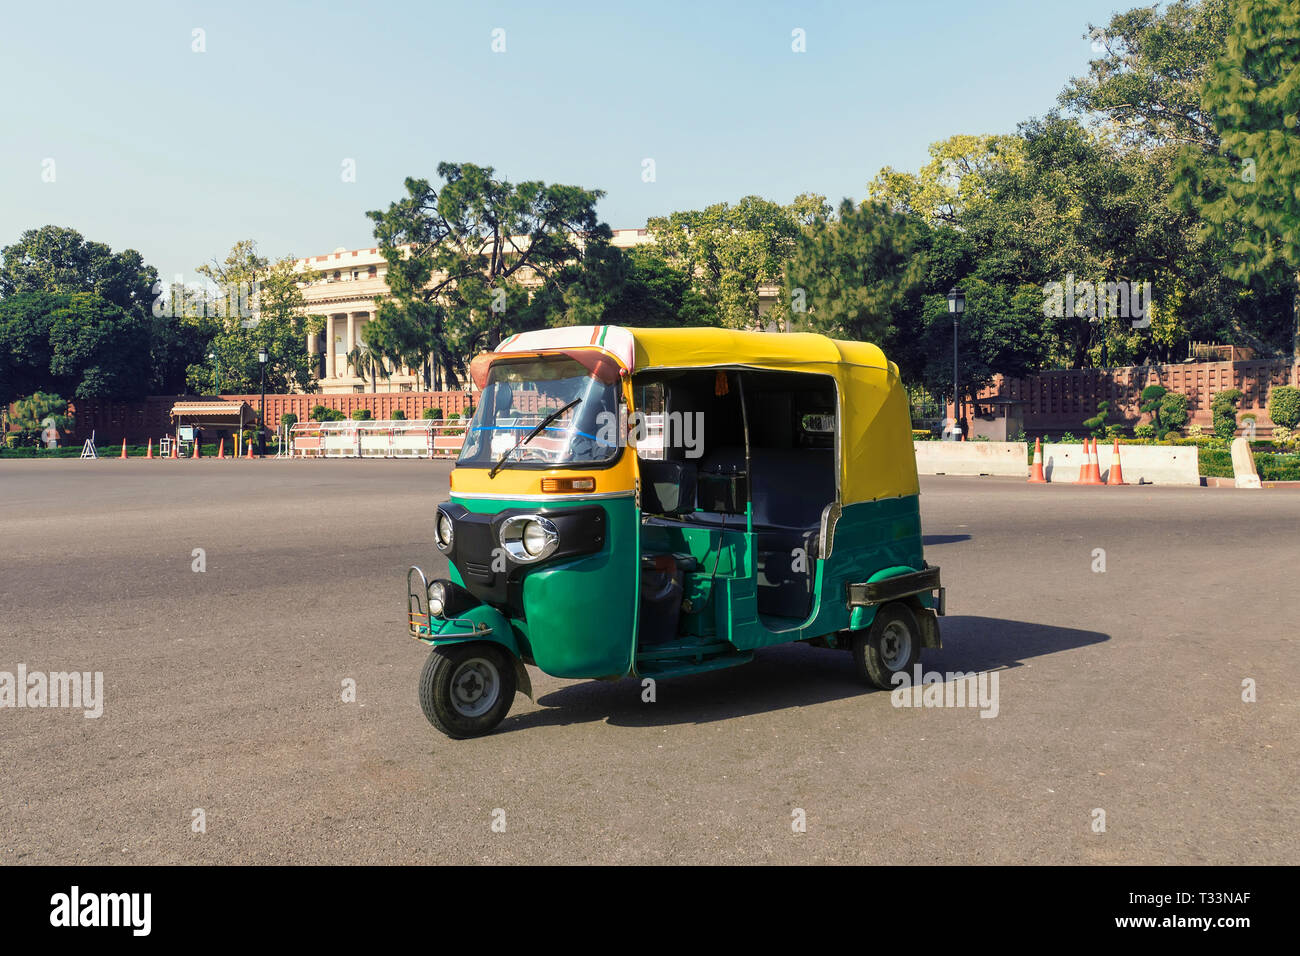 Tuk Tuk - Traditionelle indische moto Rikscha Taxi auf der Straße von Neu  Delhi. gelb grün Dreirad steht auf dem Platz vor dem Hintergrund o  Stockfotografie - Alamy